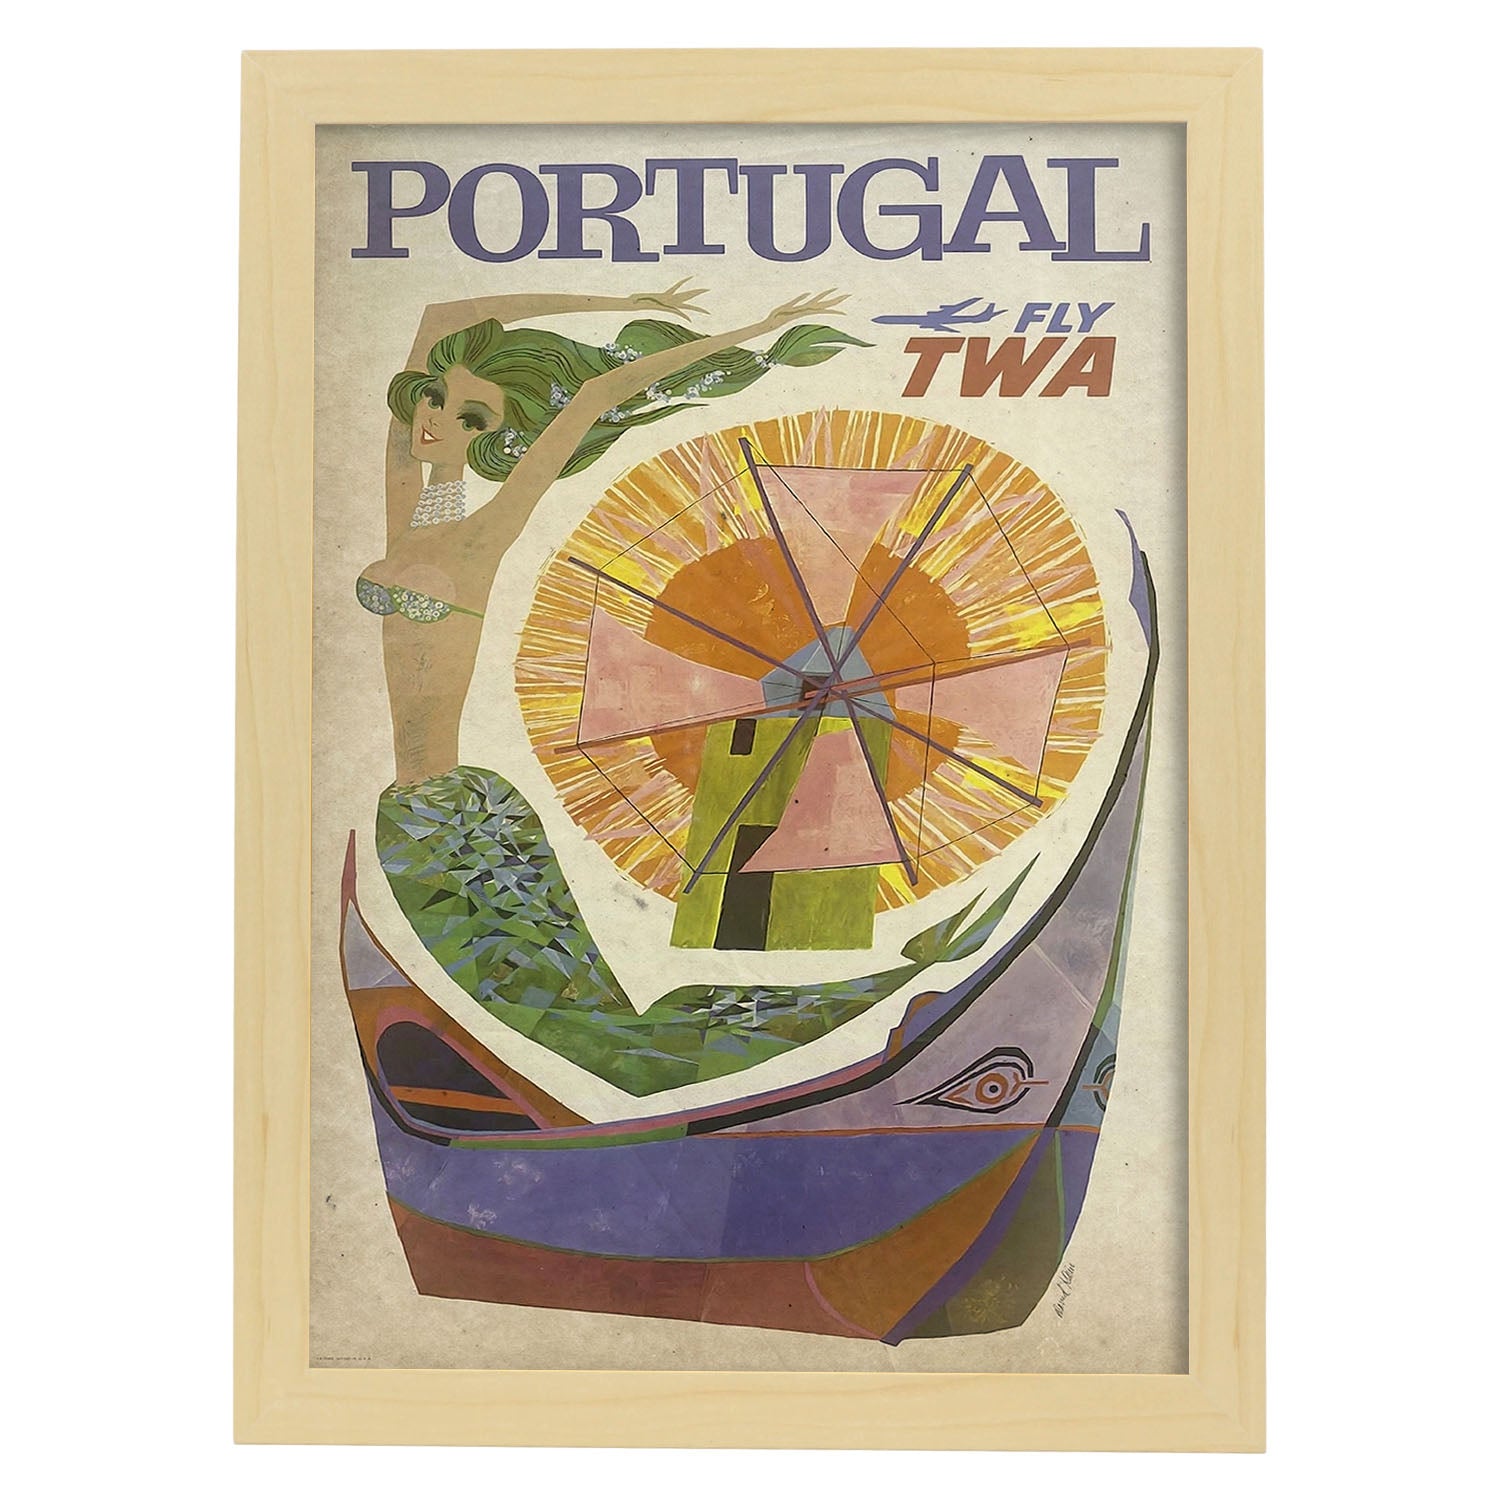 Poster vintage de Portugal. con imágenes vintage y de publicidad antigua.-Artwork-Nacnic-A4-Marco Madera clara-Nacnic Estudio SL